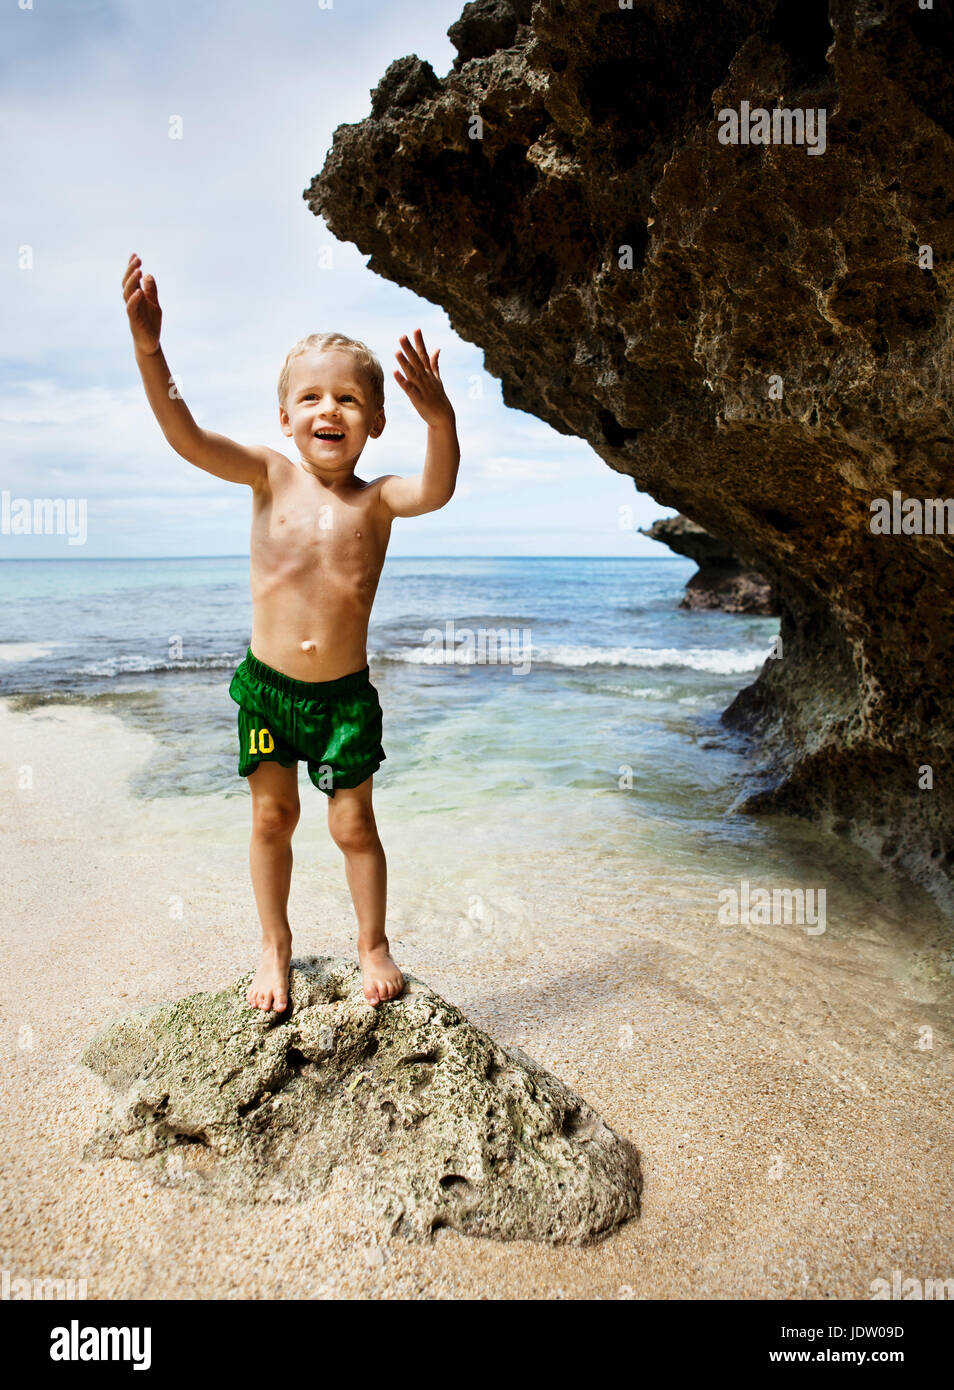 Garçon jouant sur des rochers sur la plage Banque D'Images